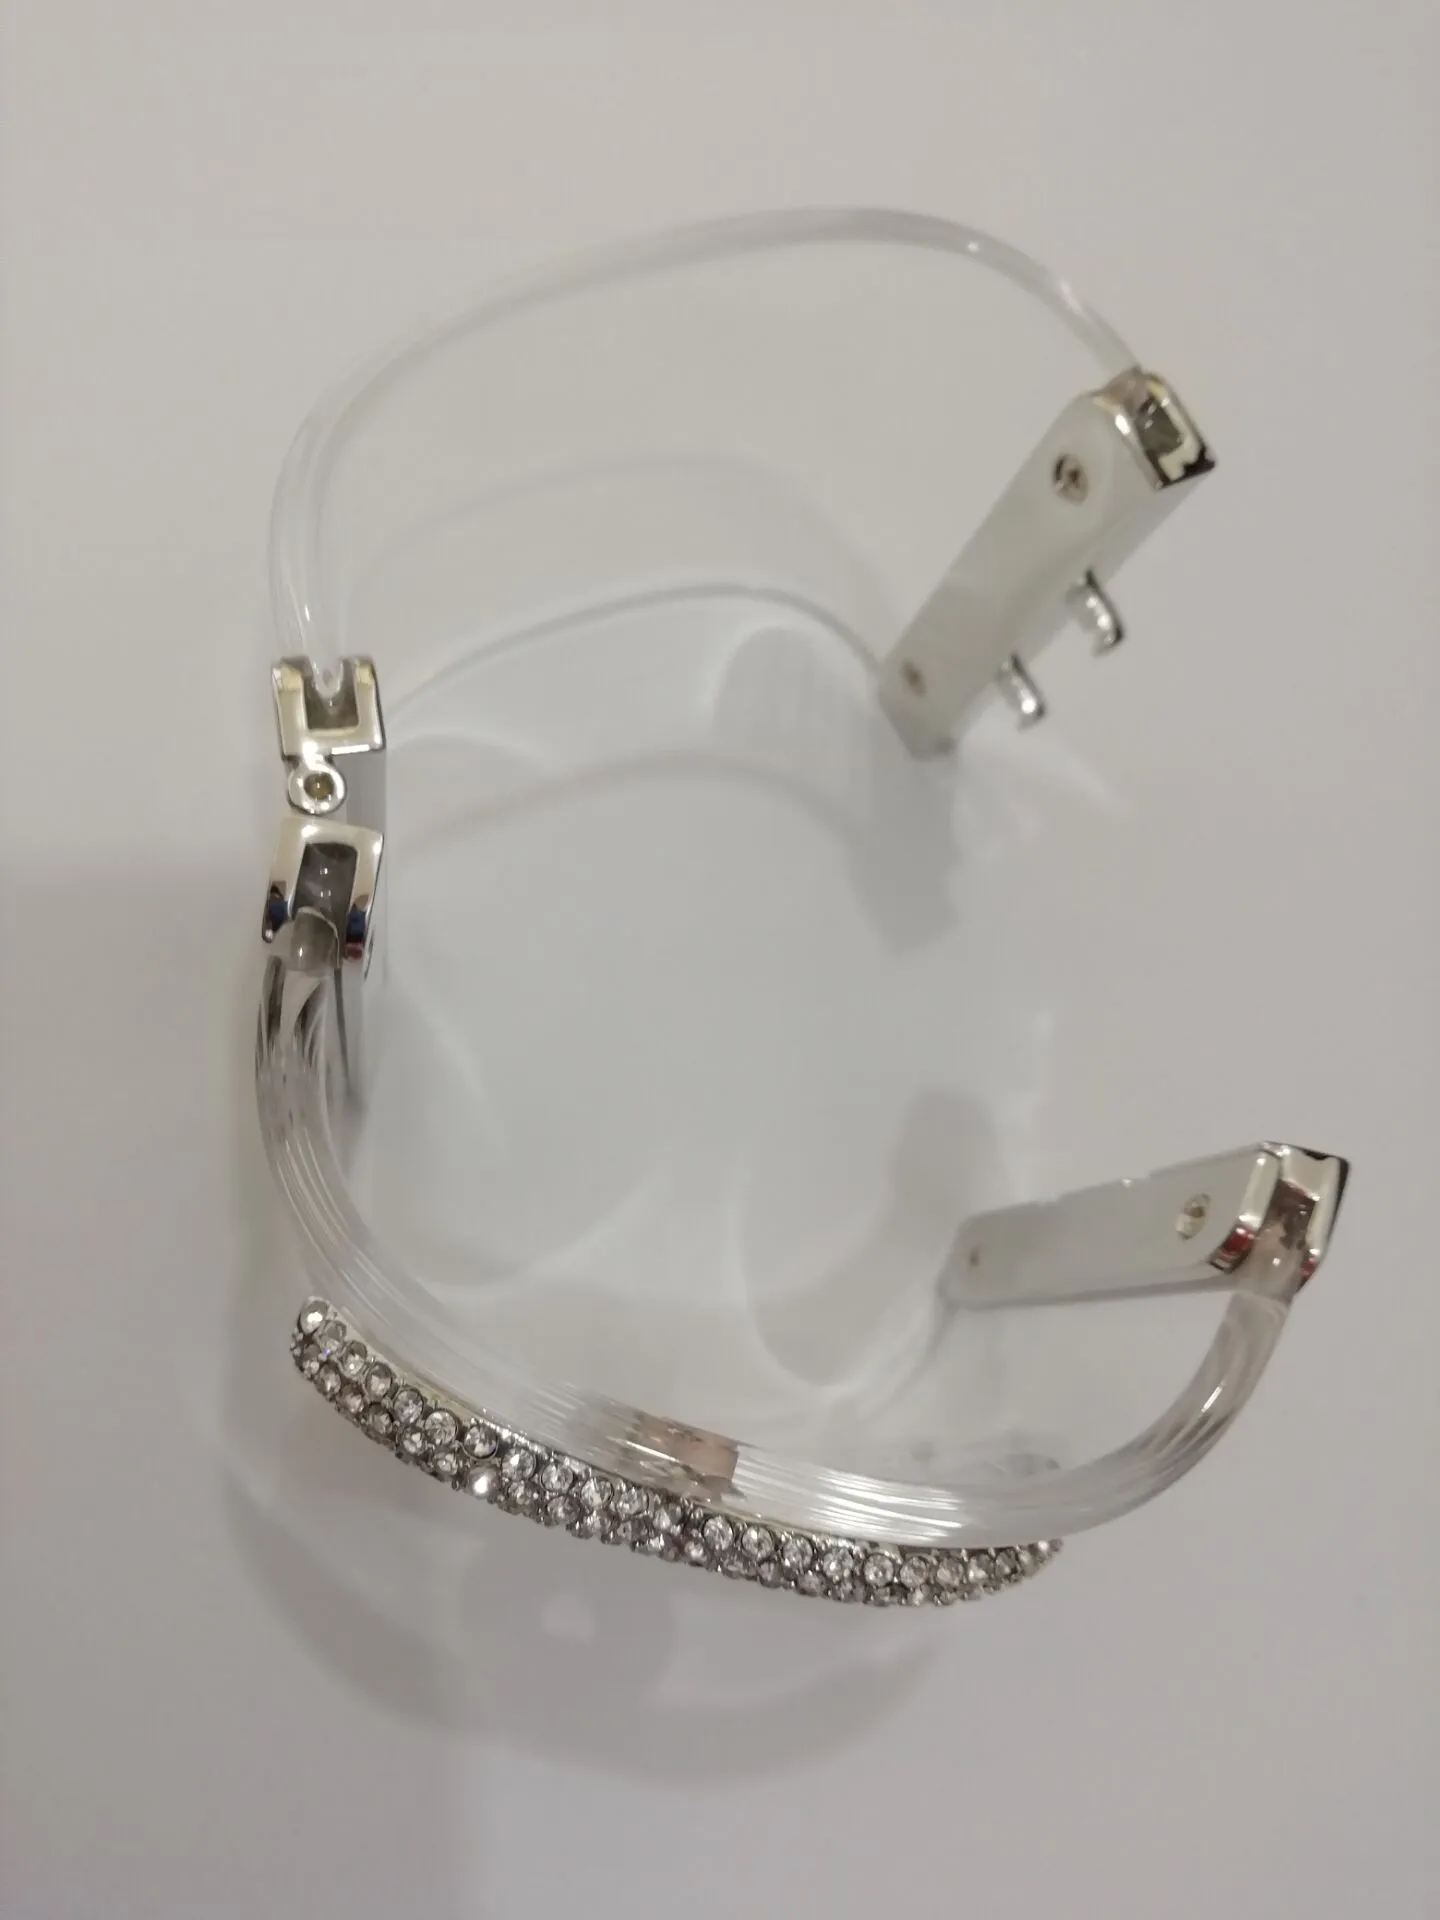 Mode populaire version haute bracelet acrylique bracelet dame bracelets de créateurs bracelets pour bijoux de mariage de fête avec sac à main en papier174L